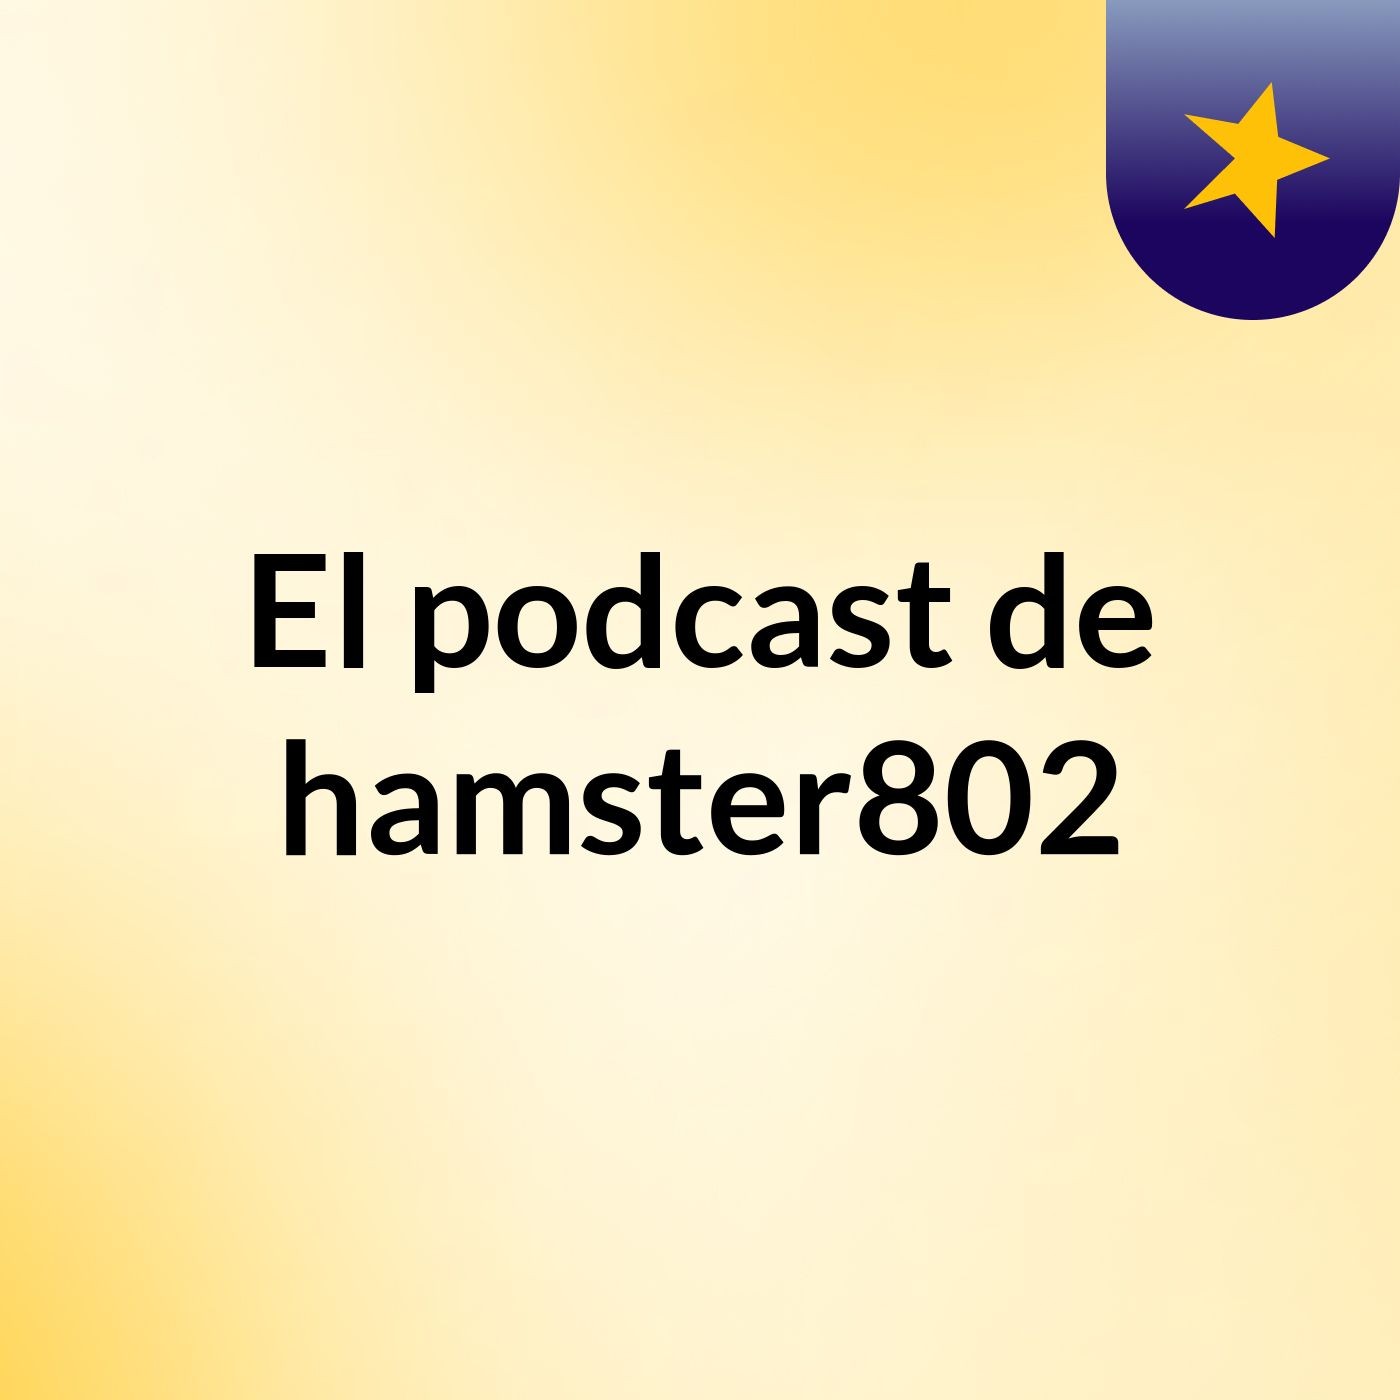 El podcast de hamster802